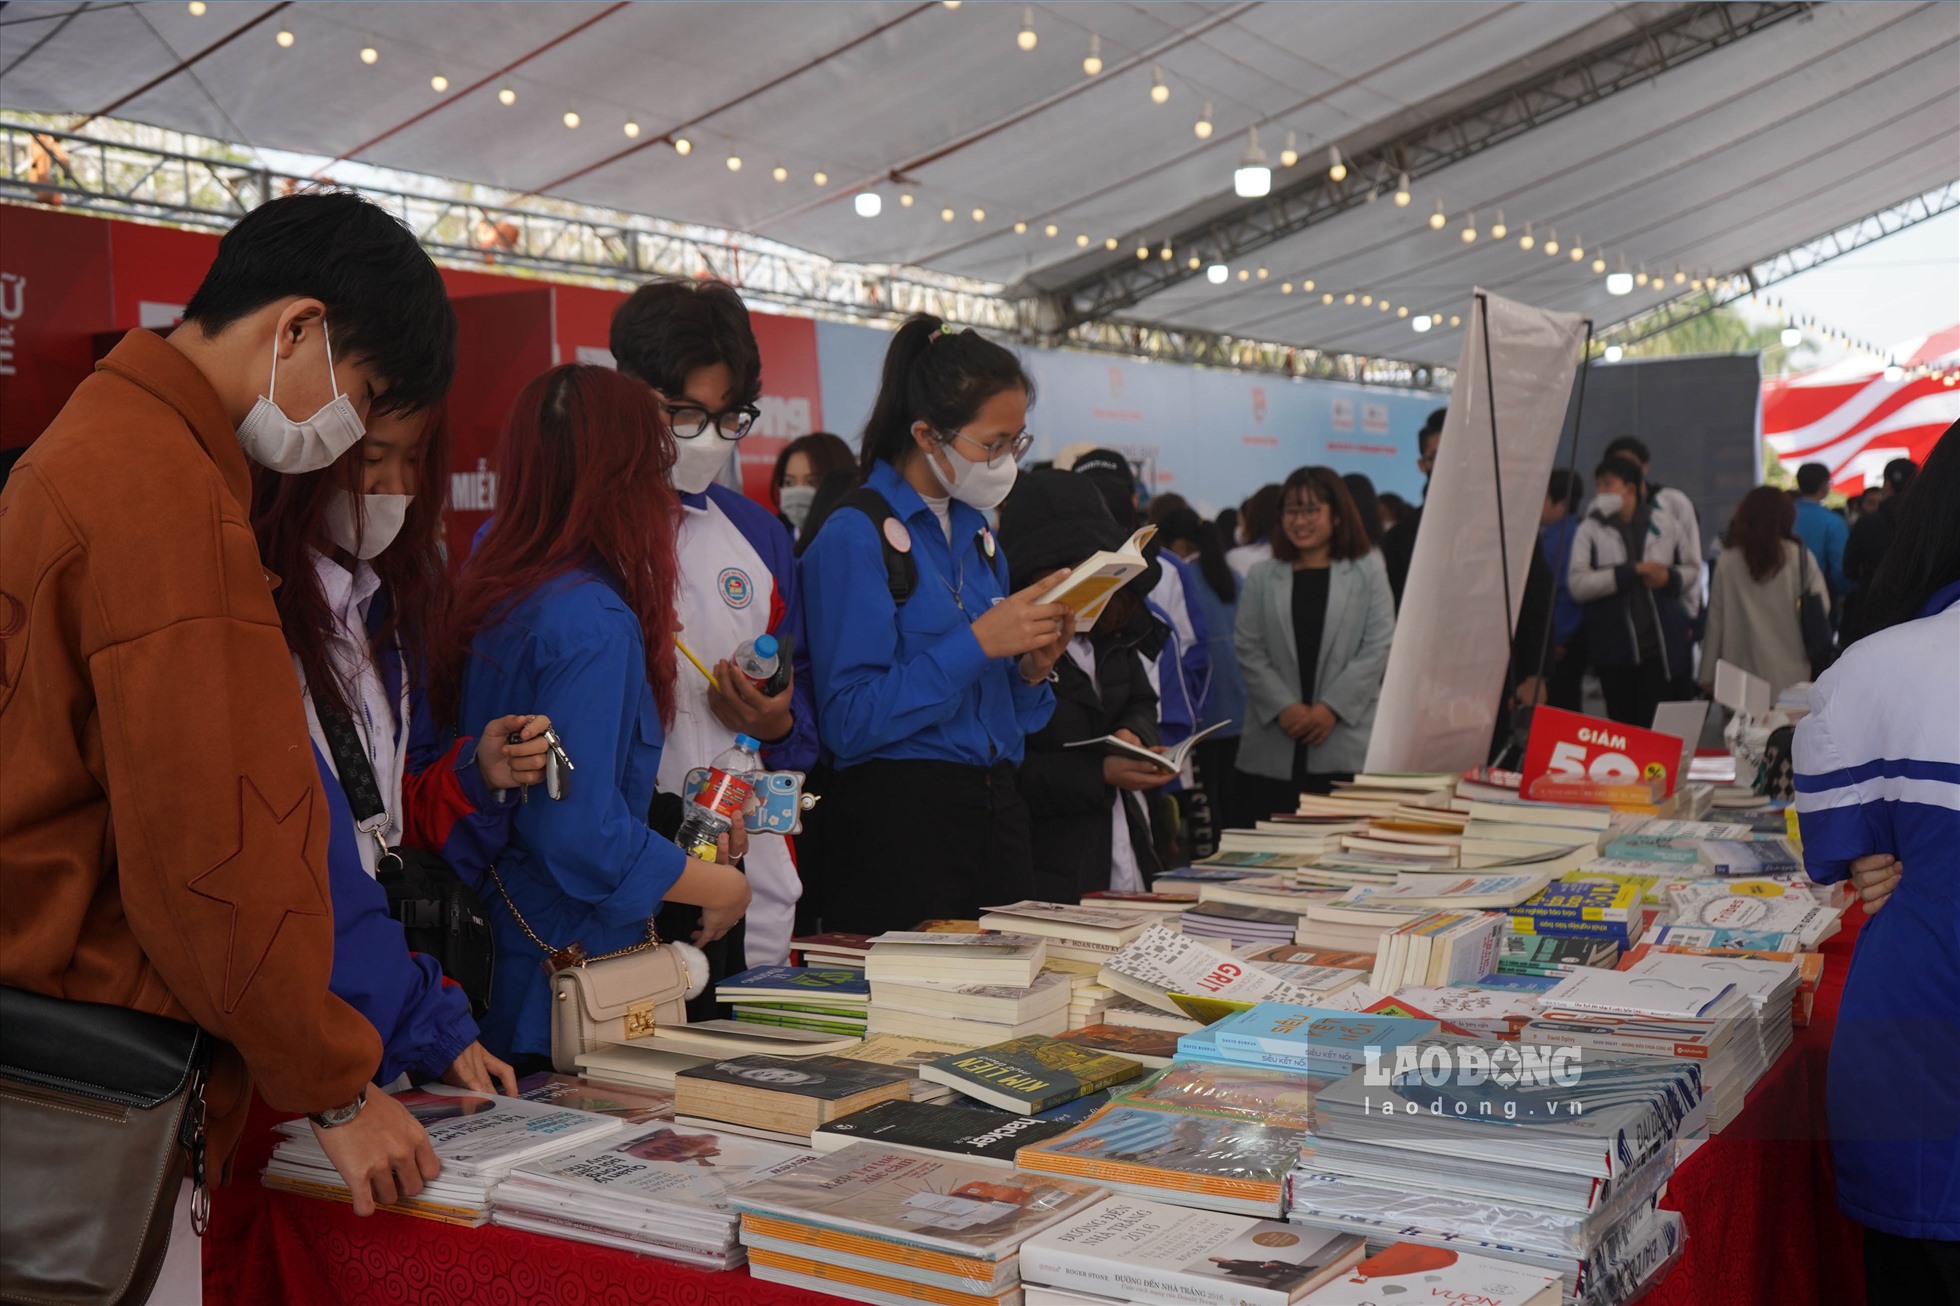 Tuần lễ sách và Văn hóa đọc của thanh niên Hải Phòng sẽ diễn ra trong trong 7 ngày (từ 26.2 - 4.3.2023).